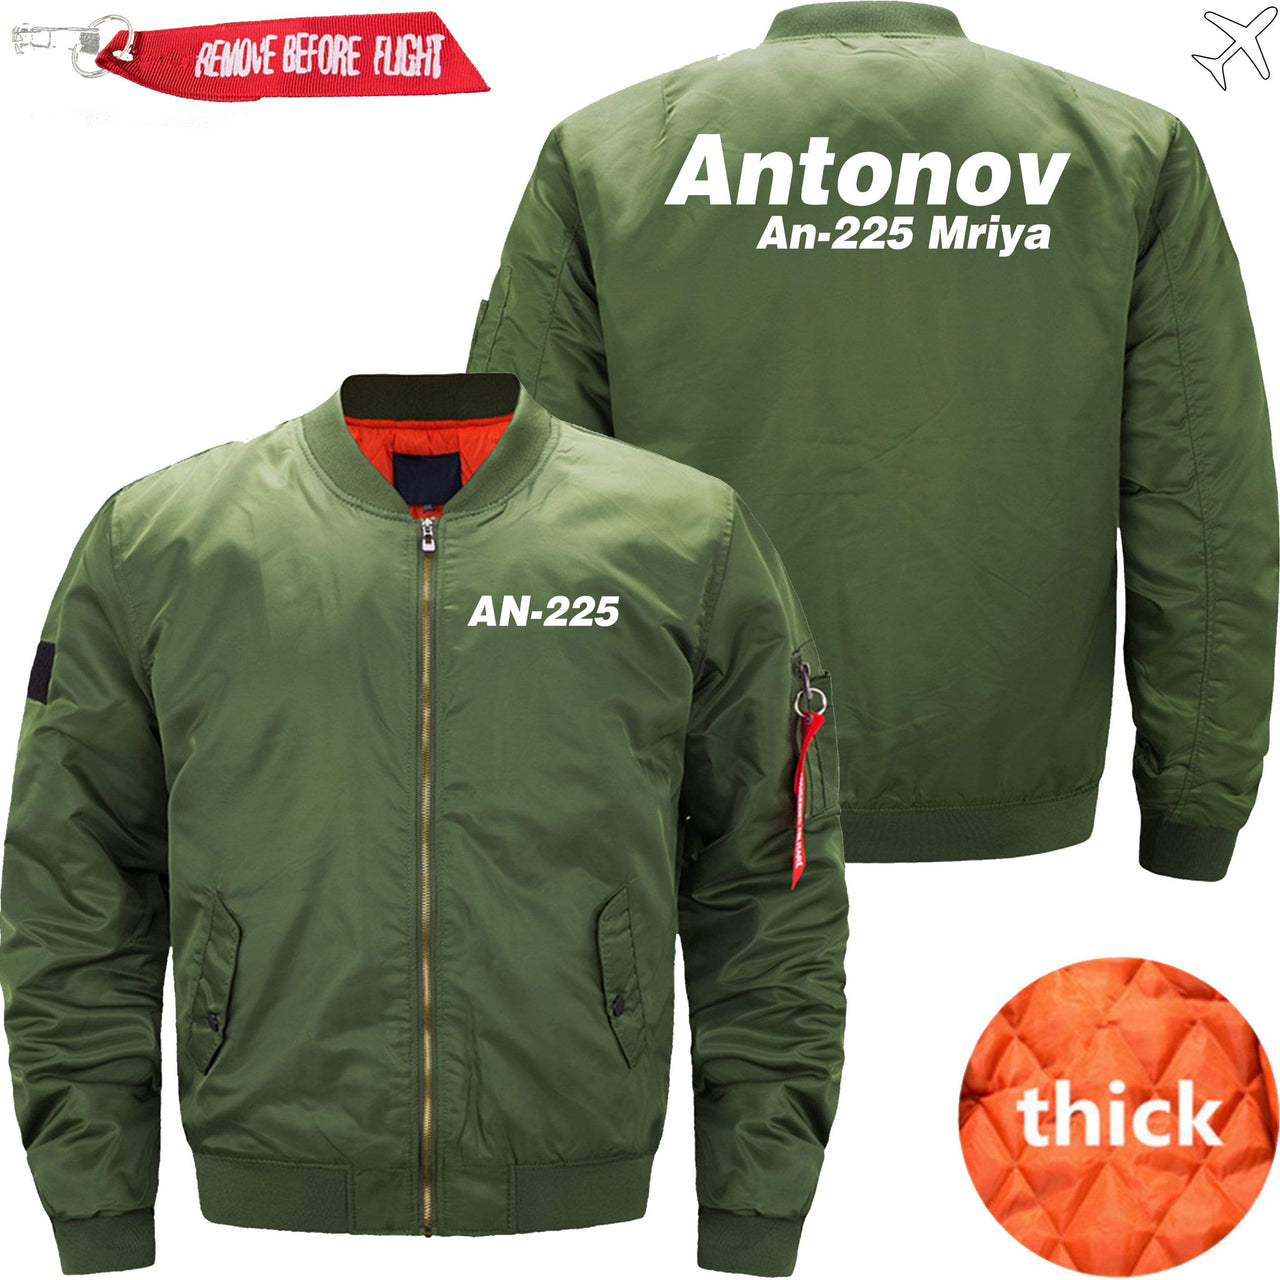 ANTONOV AN-225 MRIYAIRBUS - JACKET THE AV8R